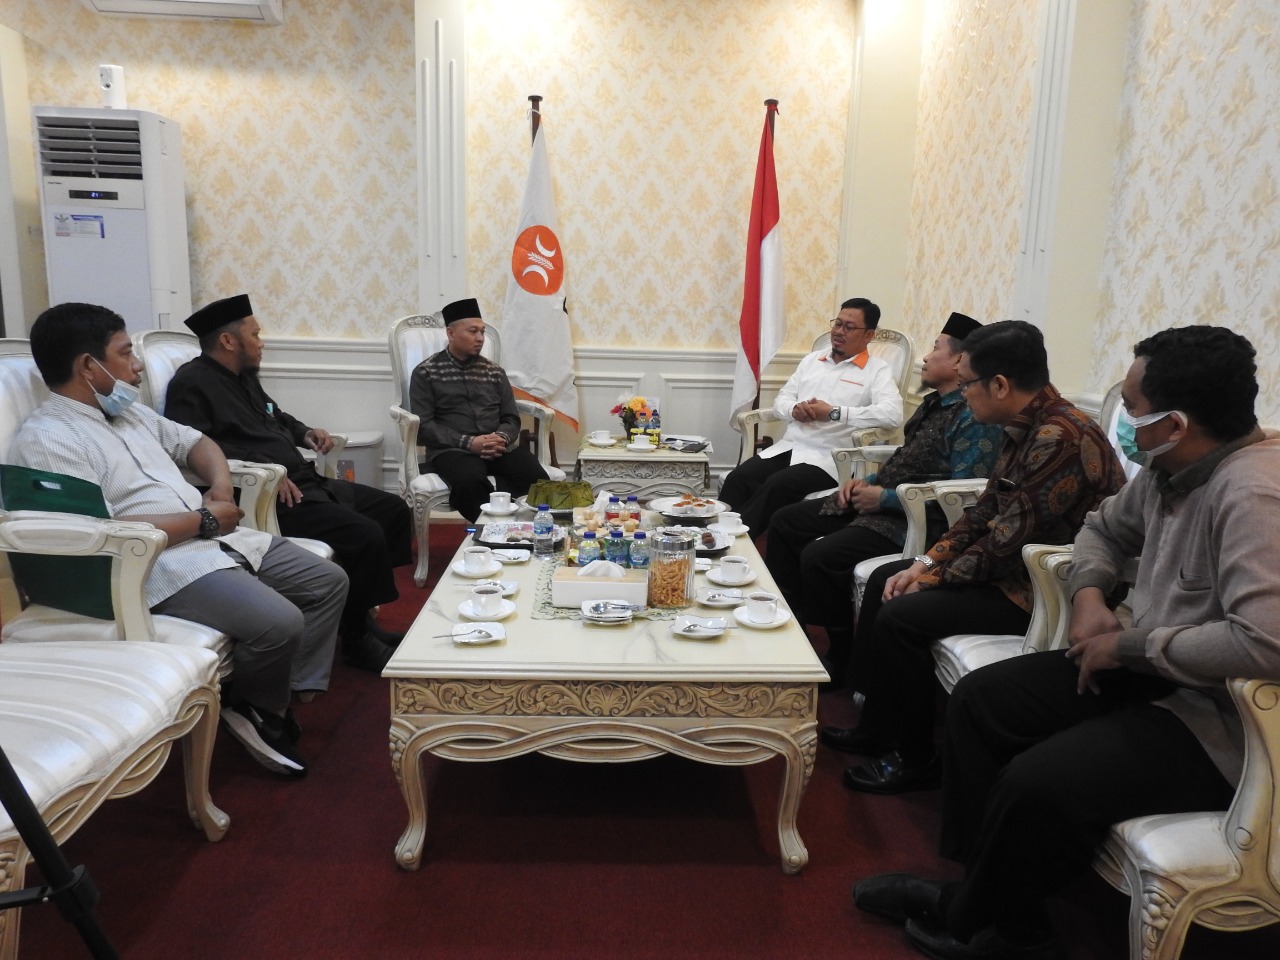  Wakil Ketua DPRD Sulsel Bangga Muktamar IV Wahdah Islamiyah Digelar di Makassar